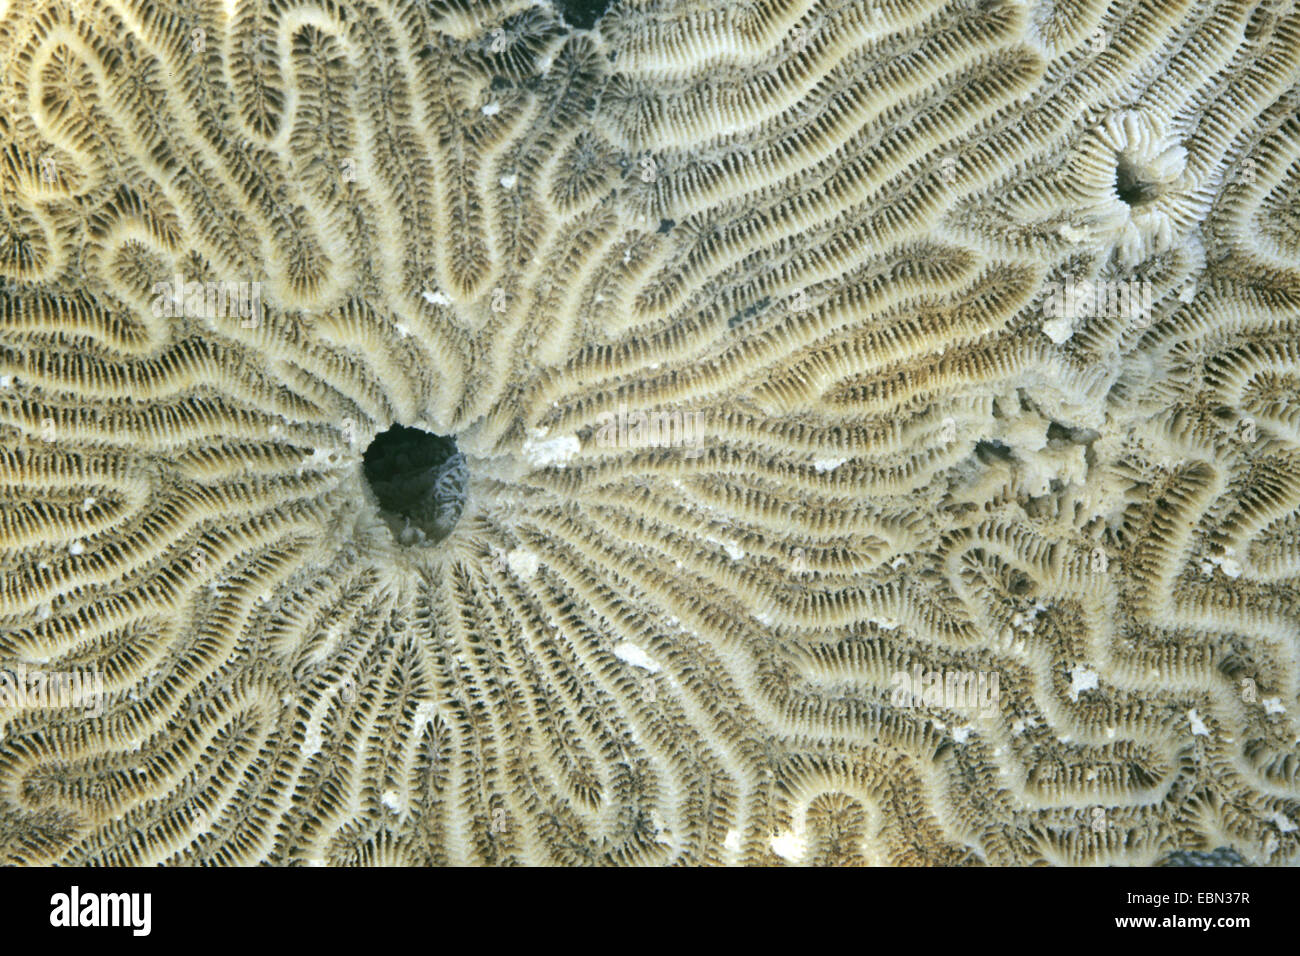 symmetrical brain coral (Diploria strigosa), detail Stock Photo